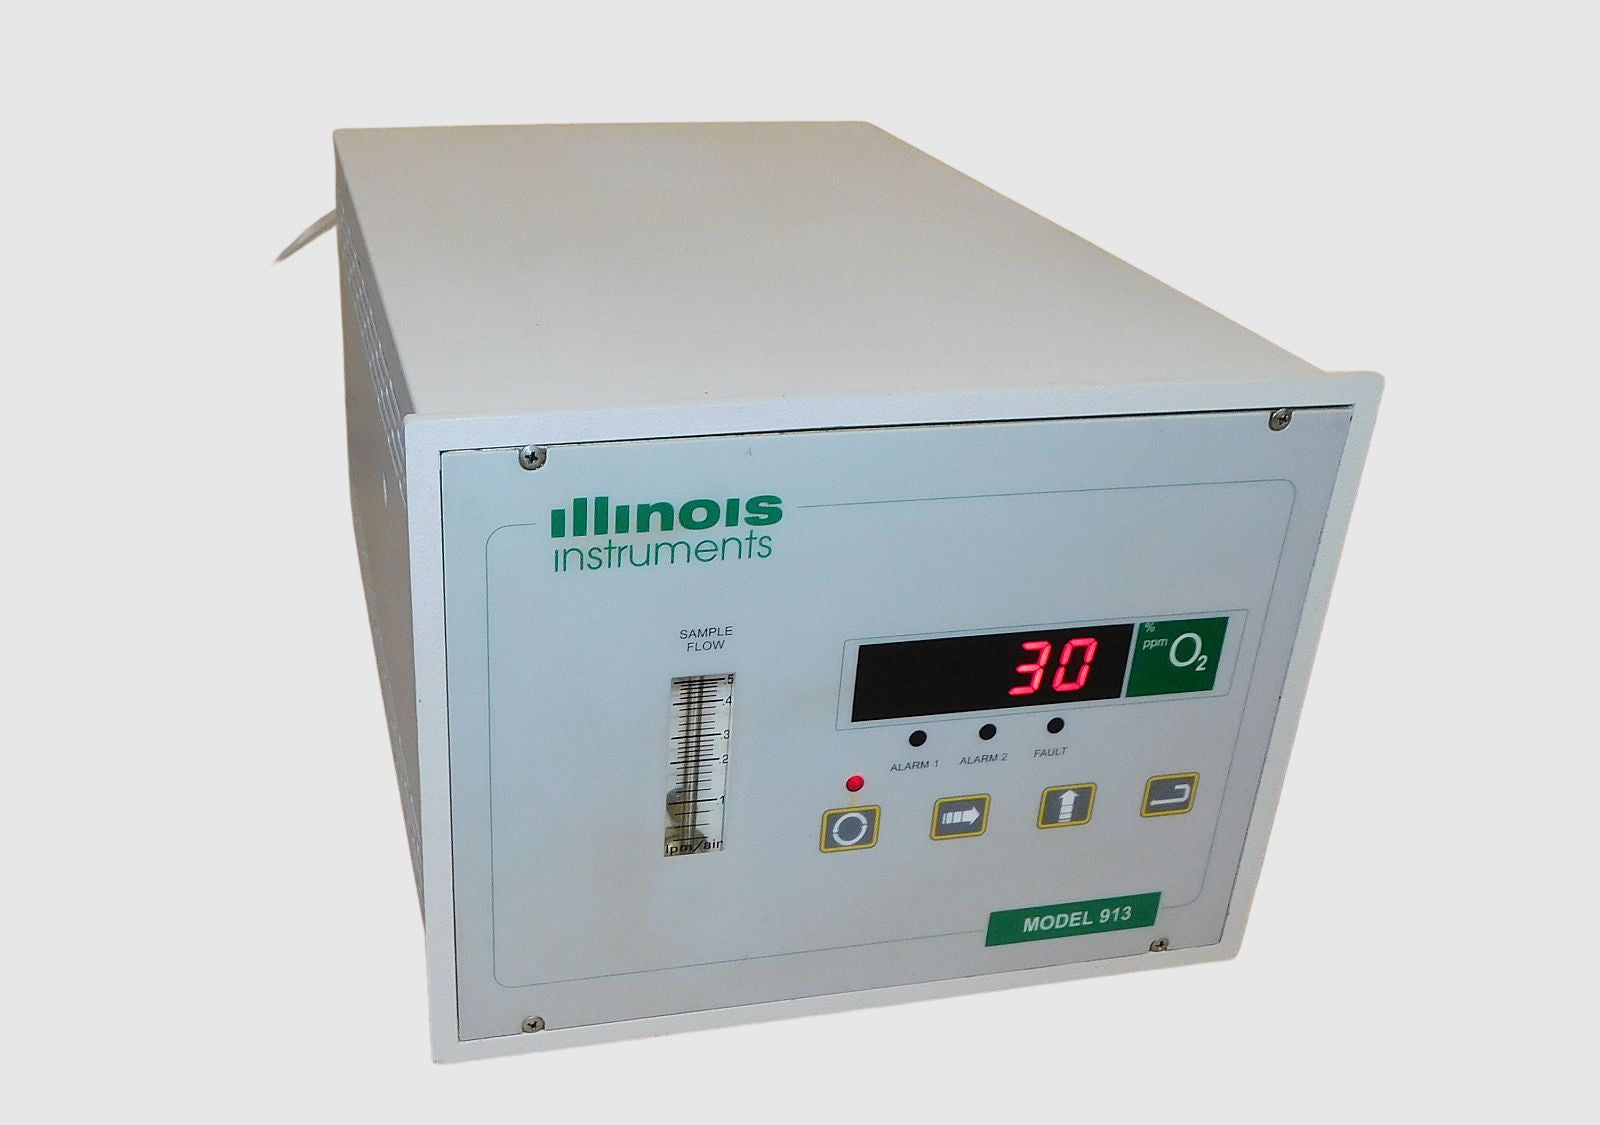 Illinois Instruments Model 913 O2 Process Oxygen Gas Analyzer Used